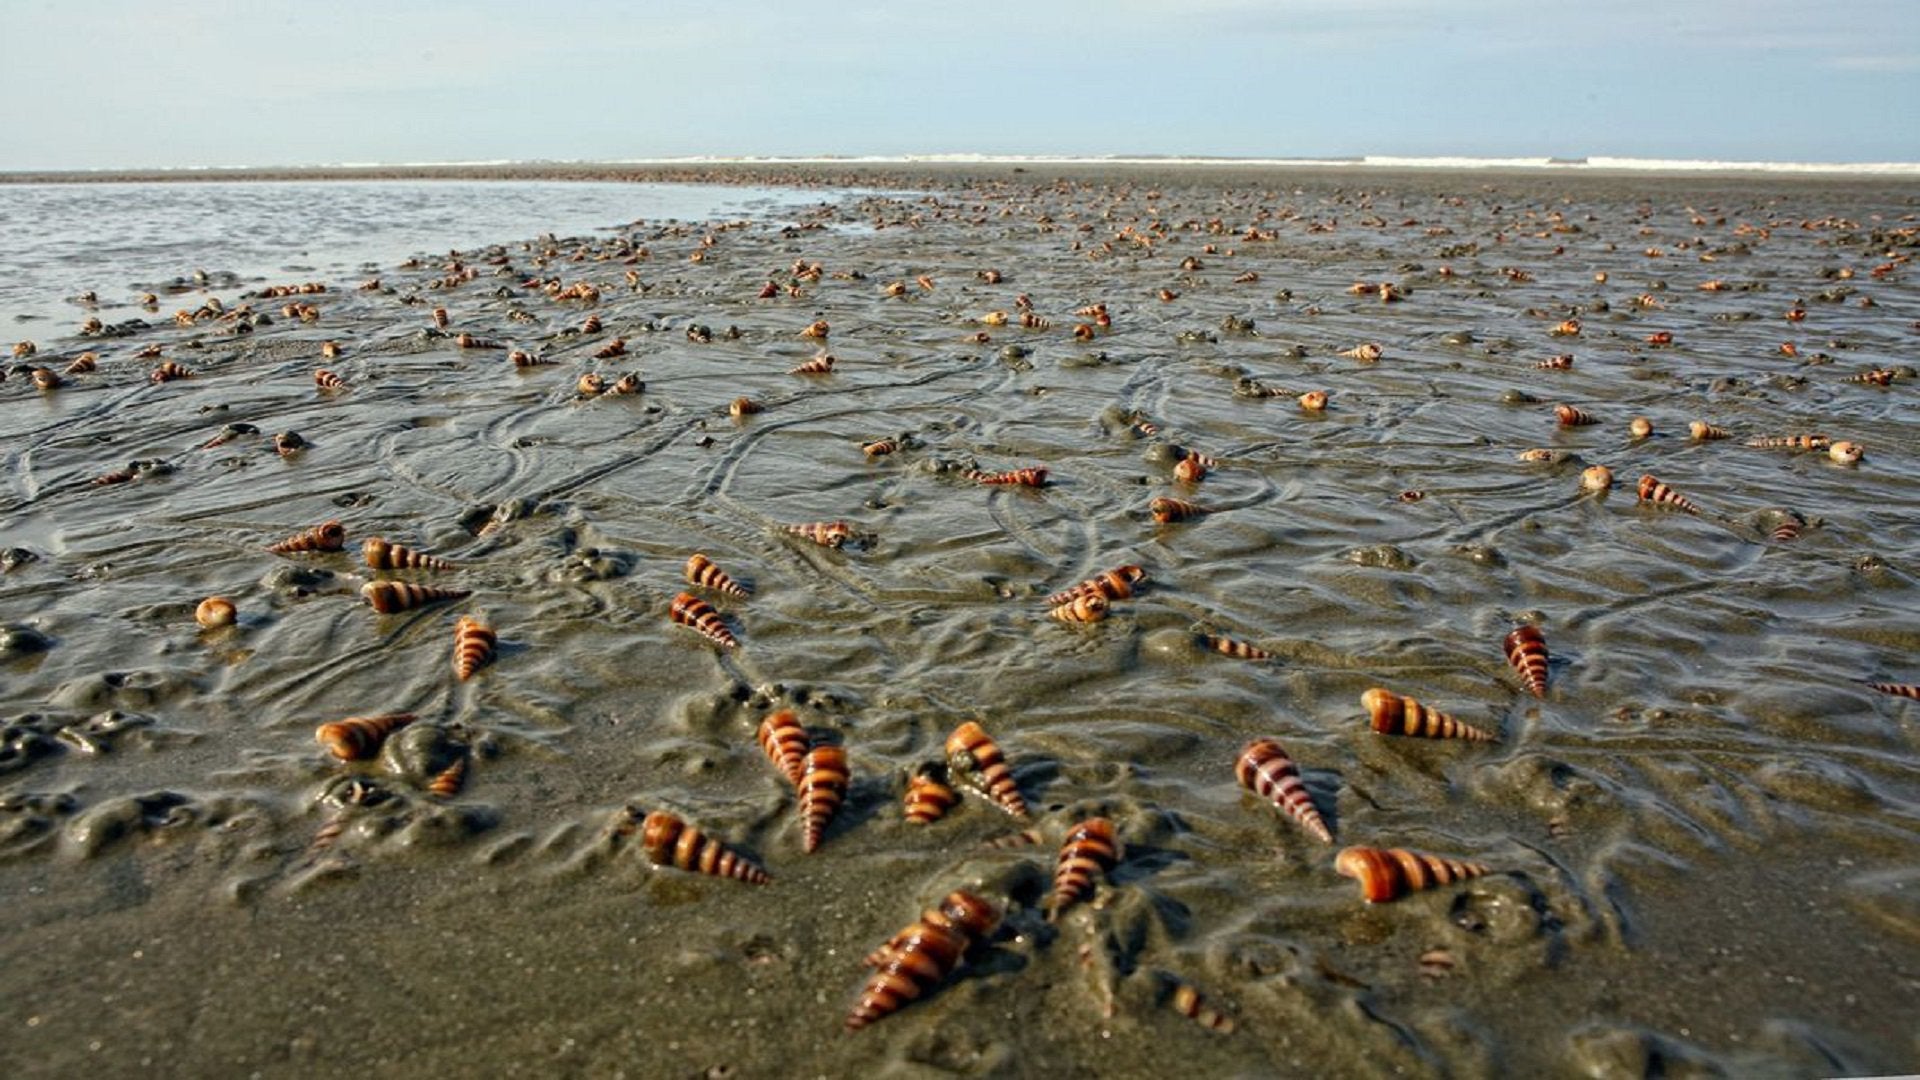 Snail in the Cox's bazar Sea beach.[1920x1080]